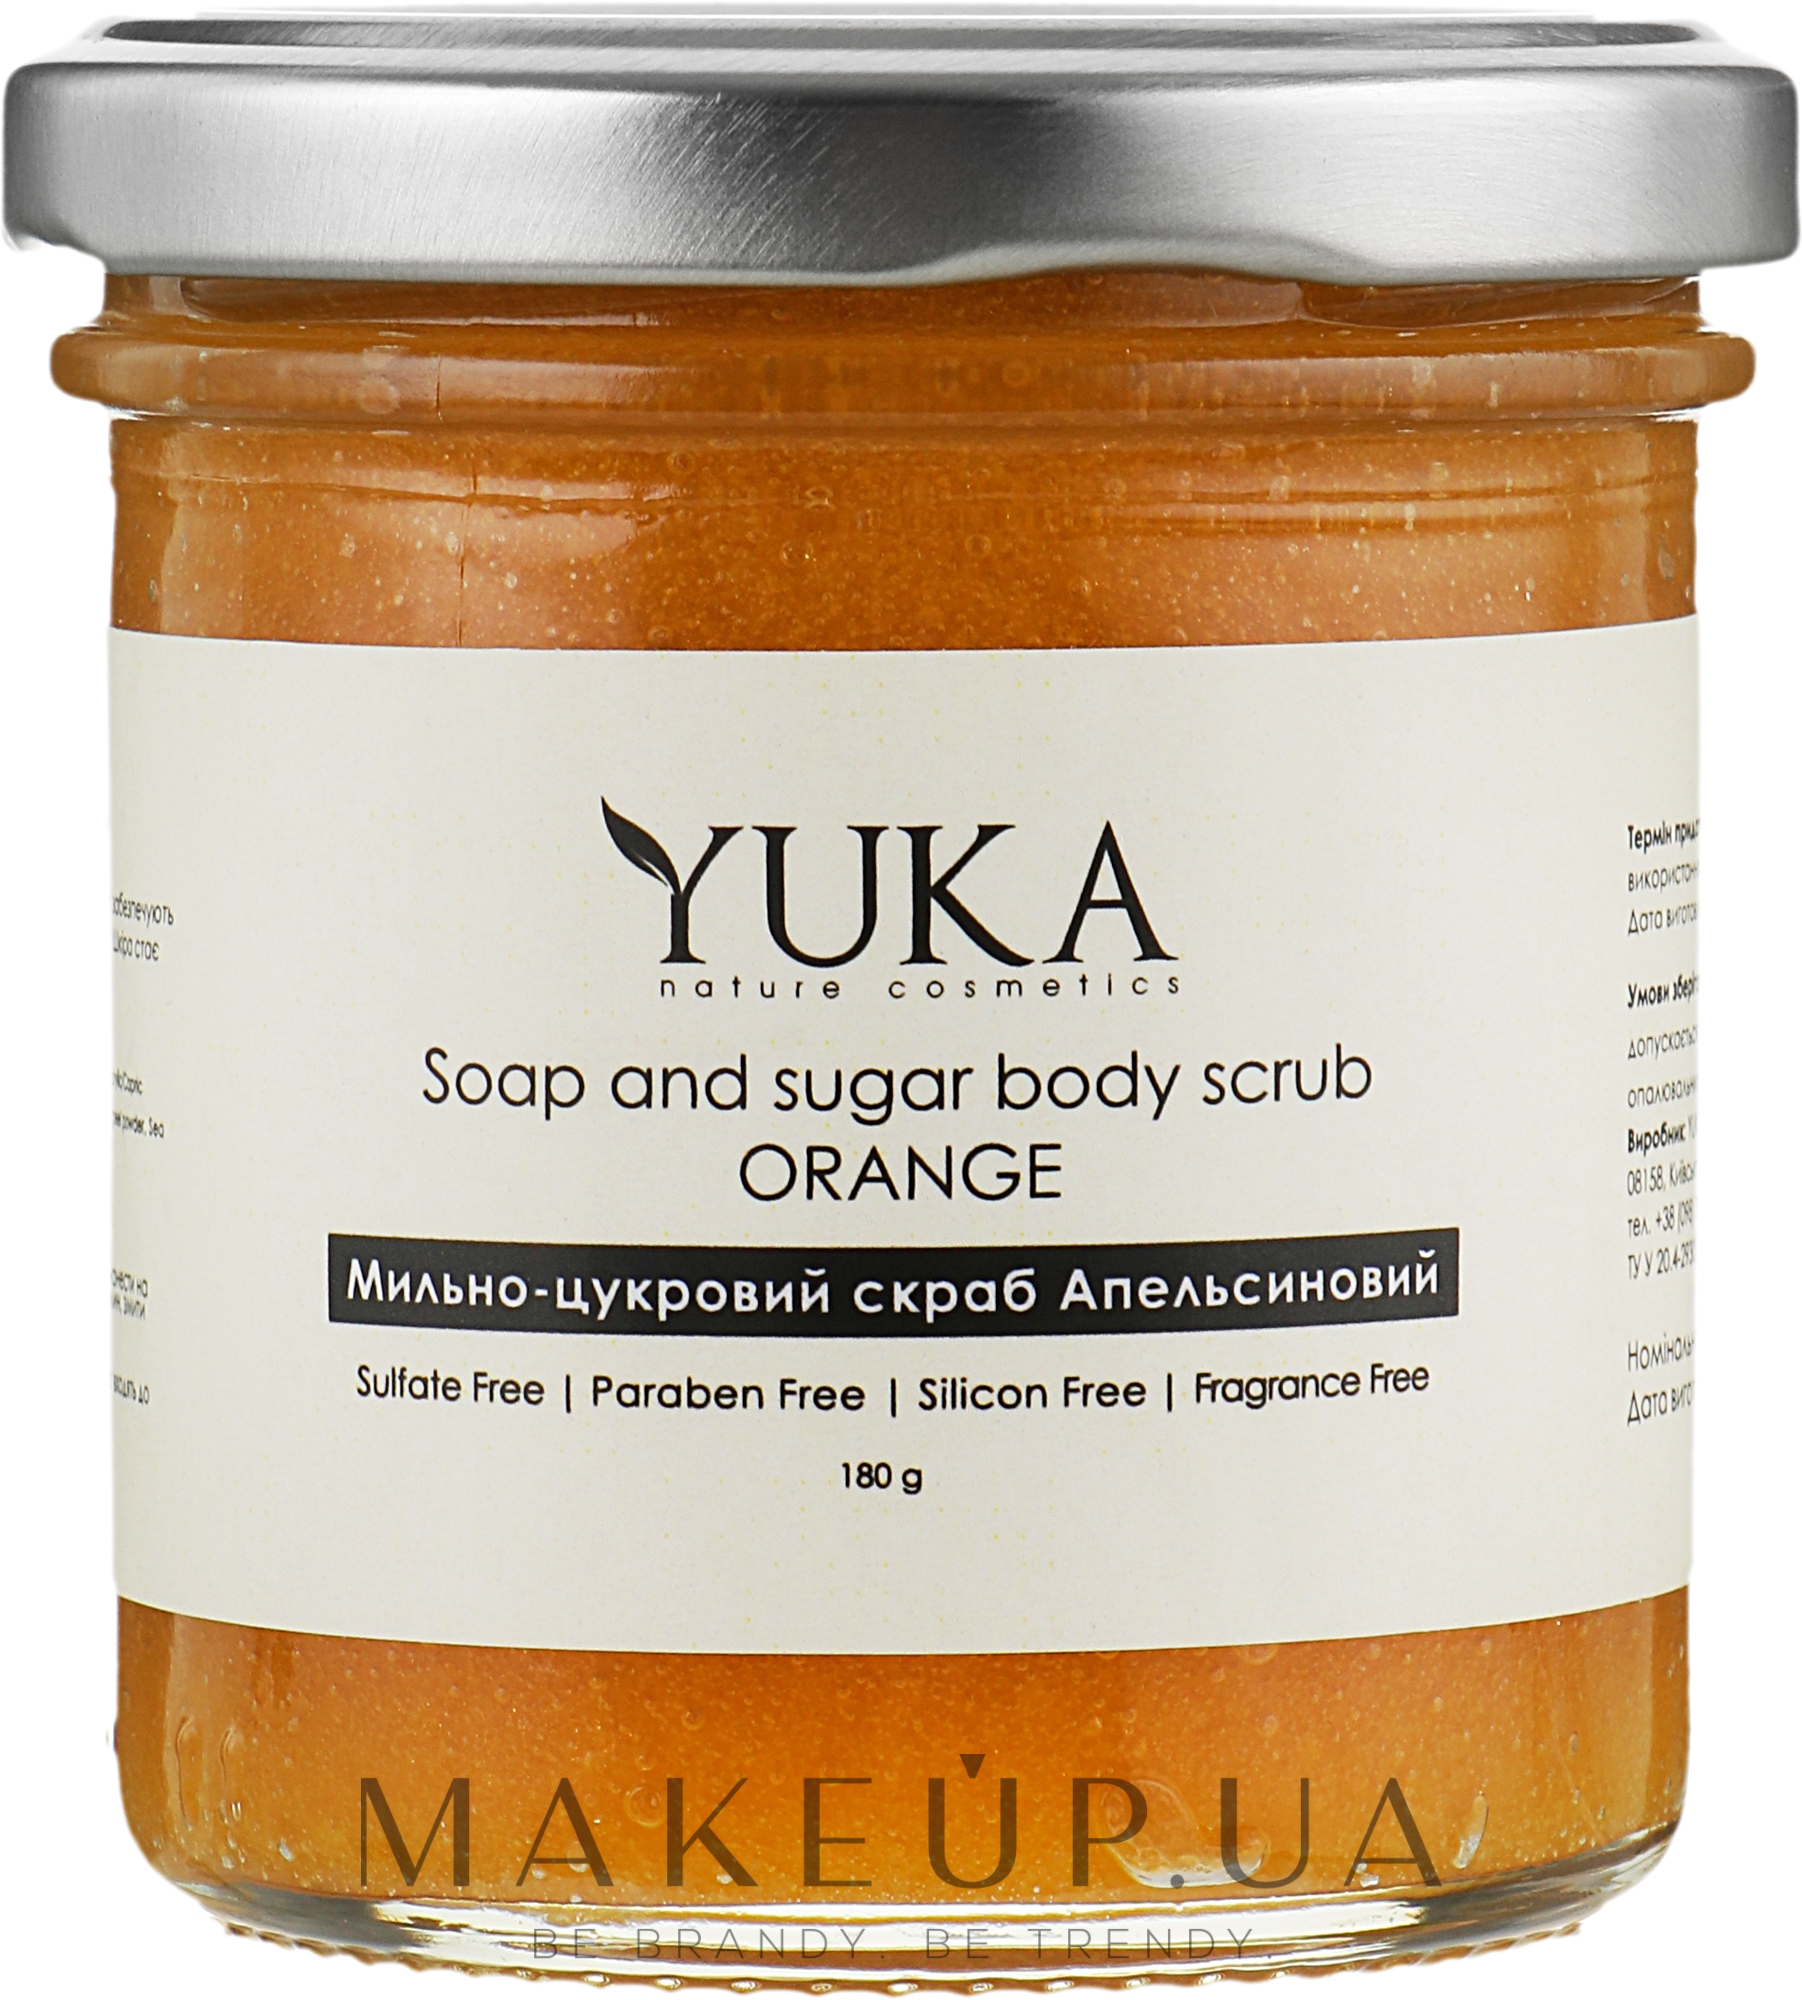 Мильно-цукровий скраб для тіла "Апельсиновий" - Yuka Soap And Sugar Body Scrub "Orange" — фото 180g